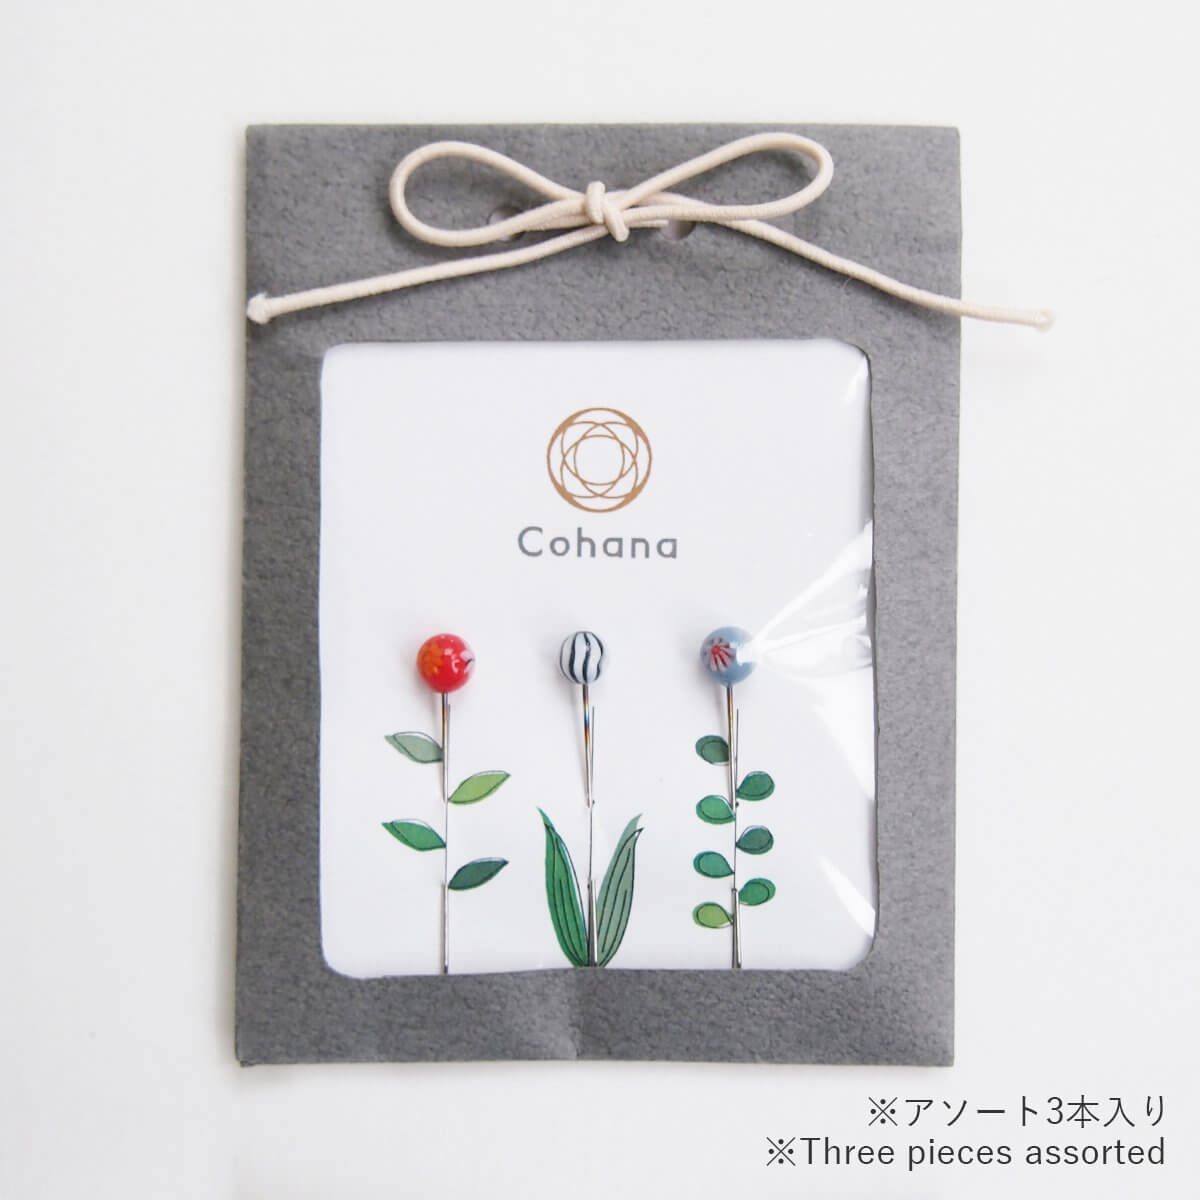 とんぼ玉の待針 (45-001) - Cohana Online Store